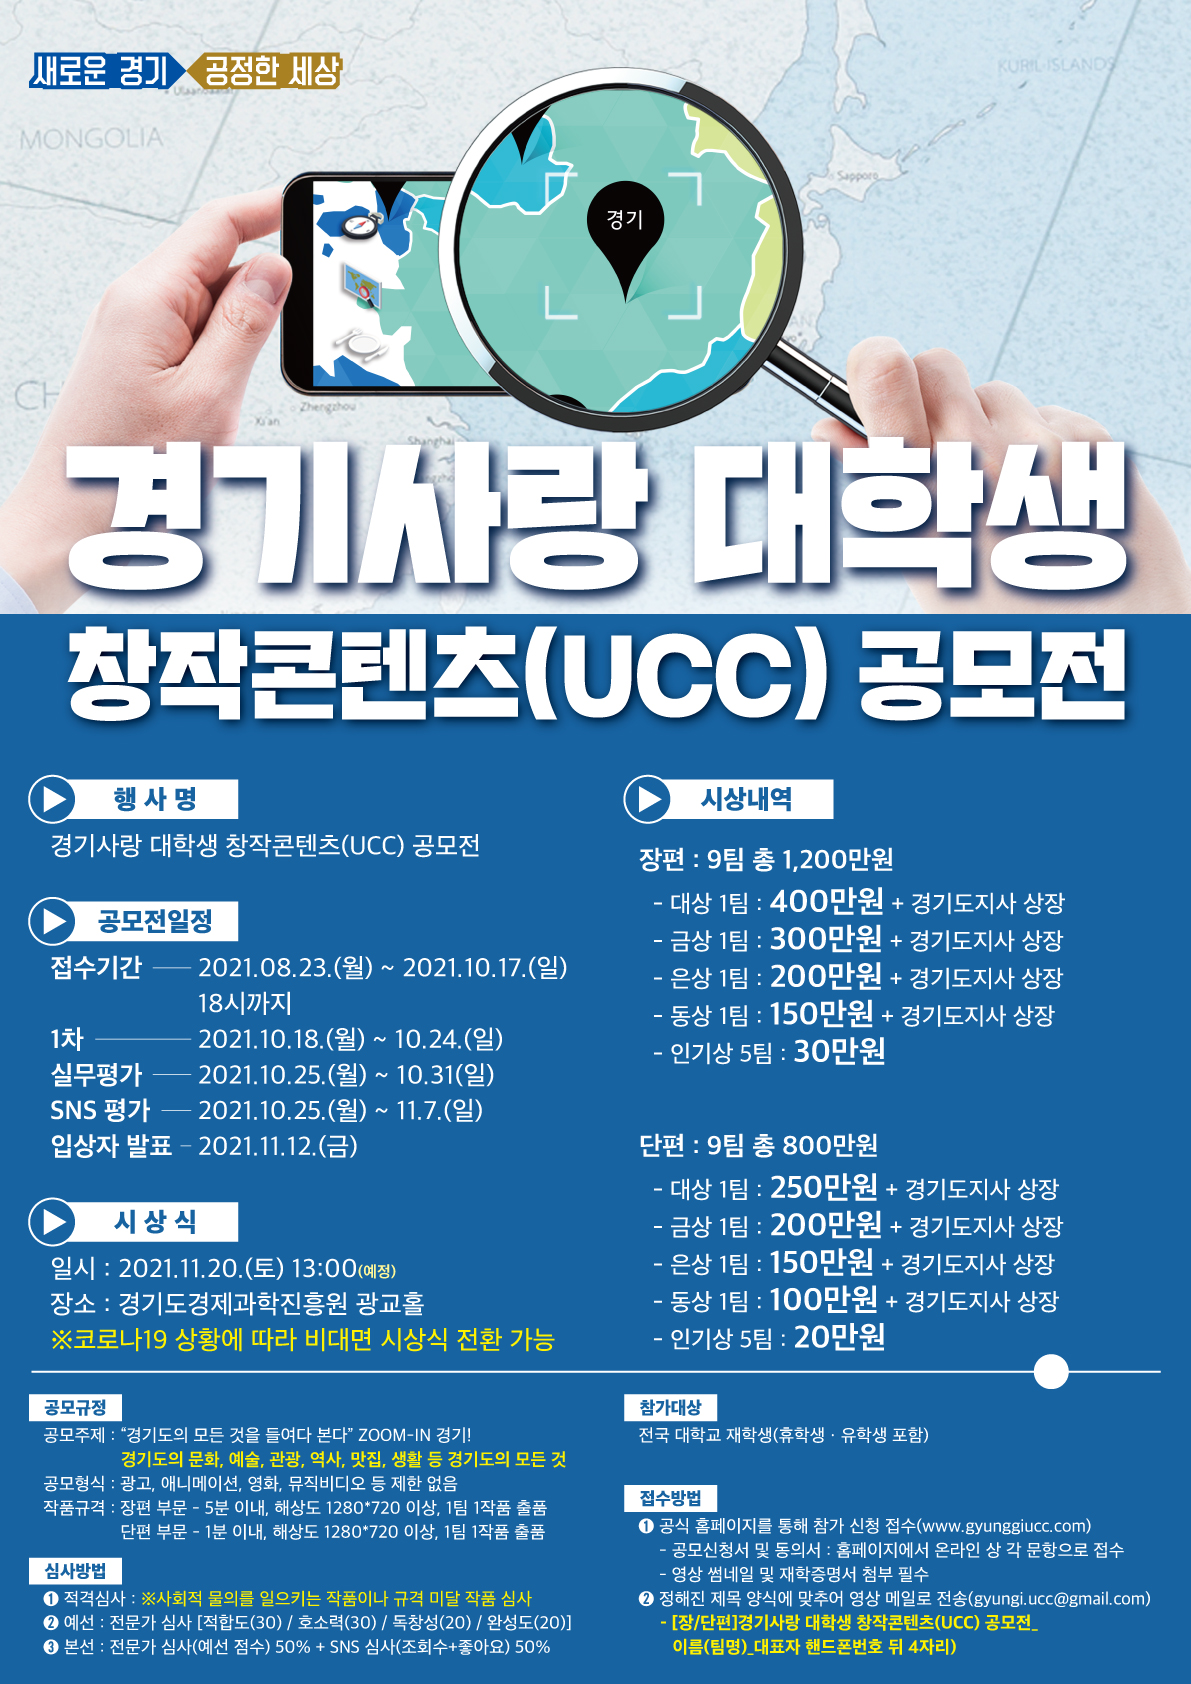  경기사랑 대학생 창작콘텐츠(UCC) 공모전 포스터.jpg